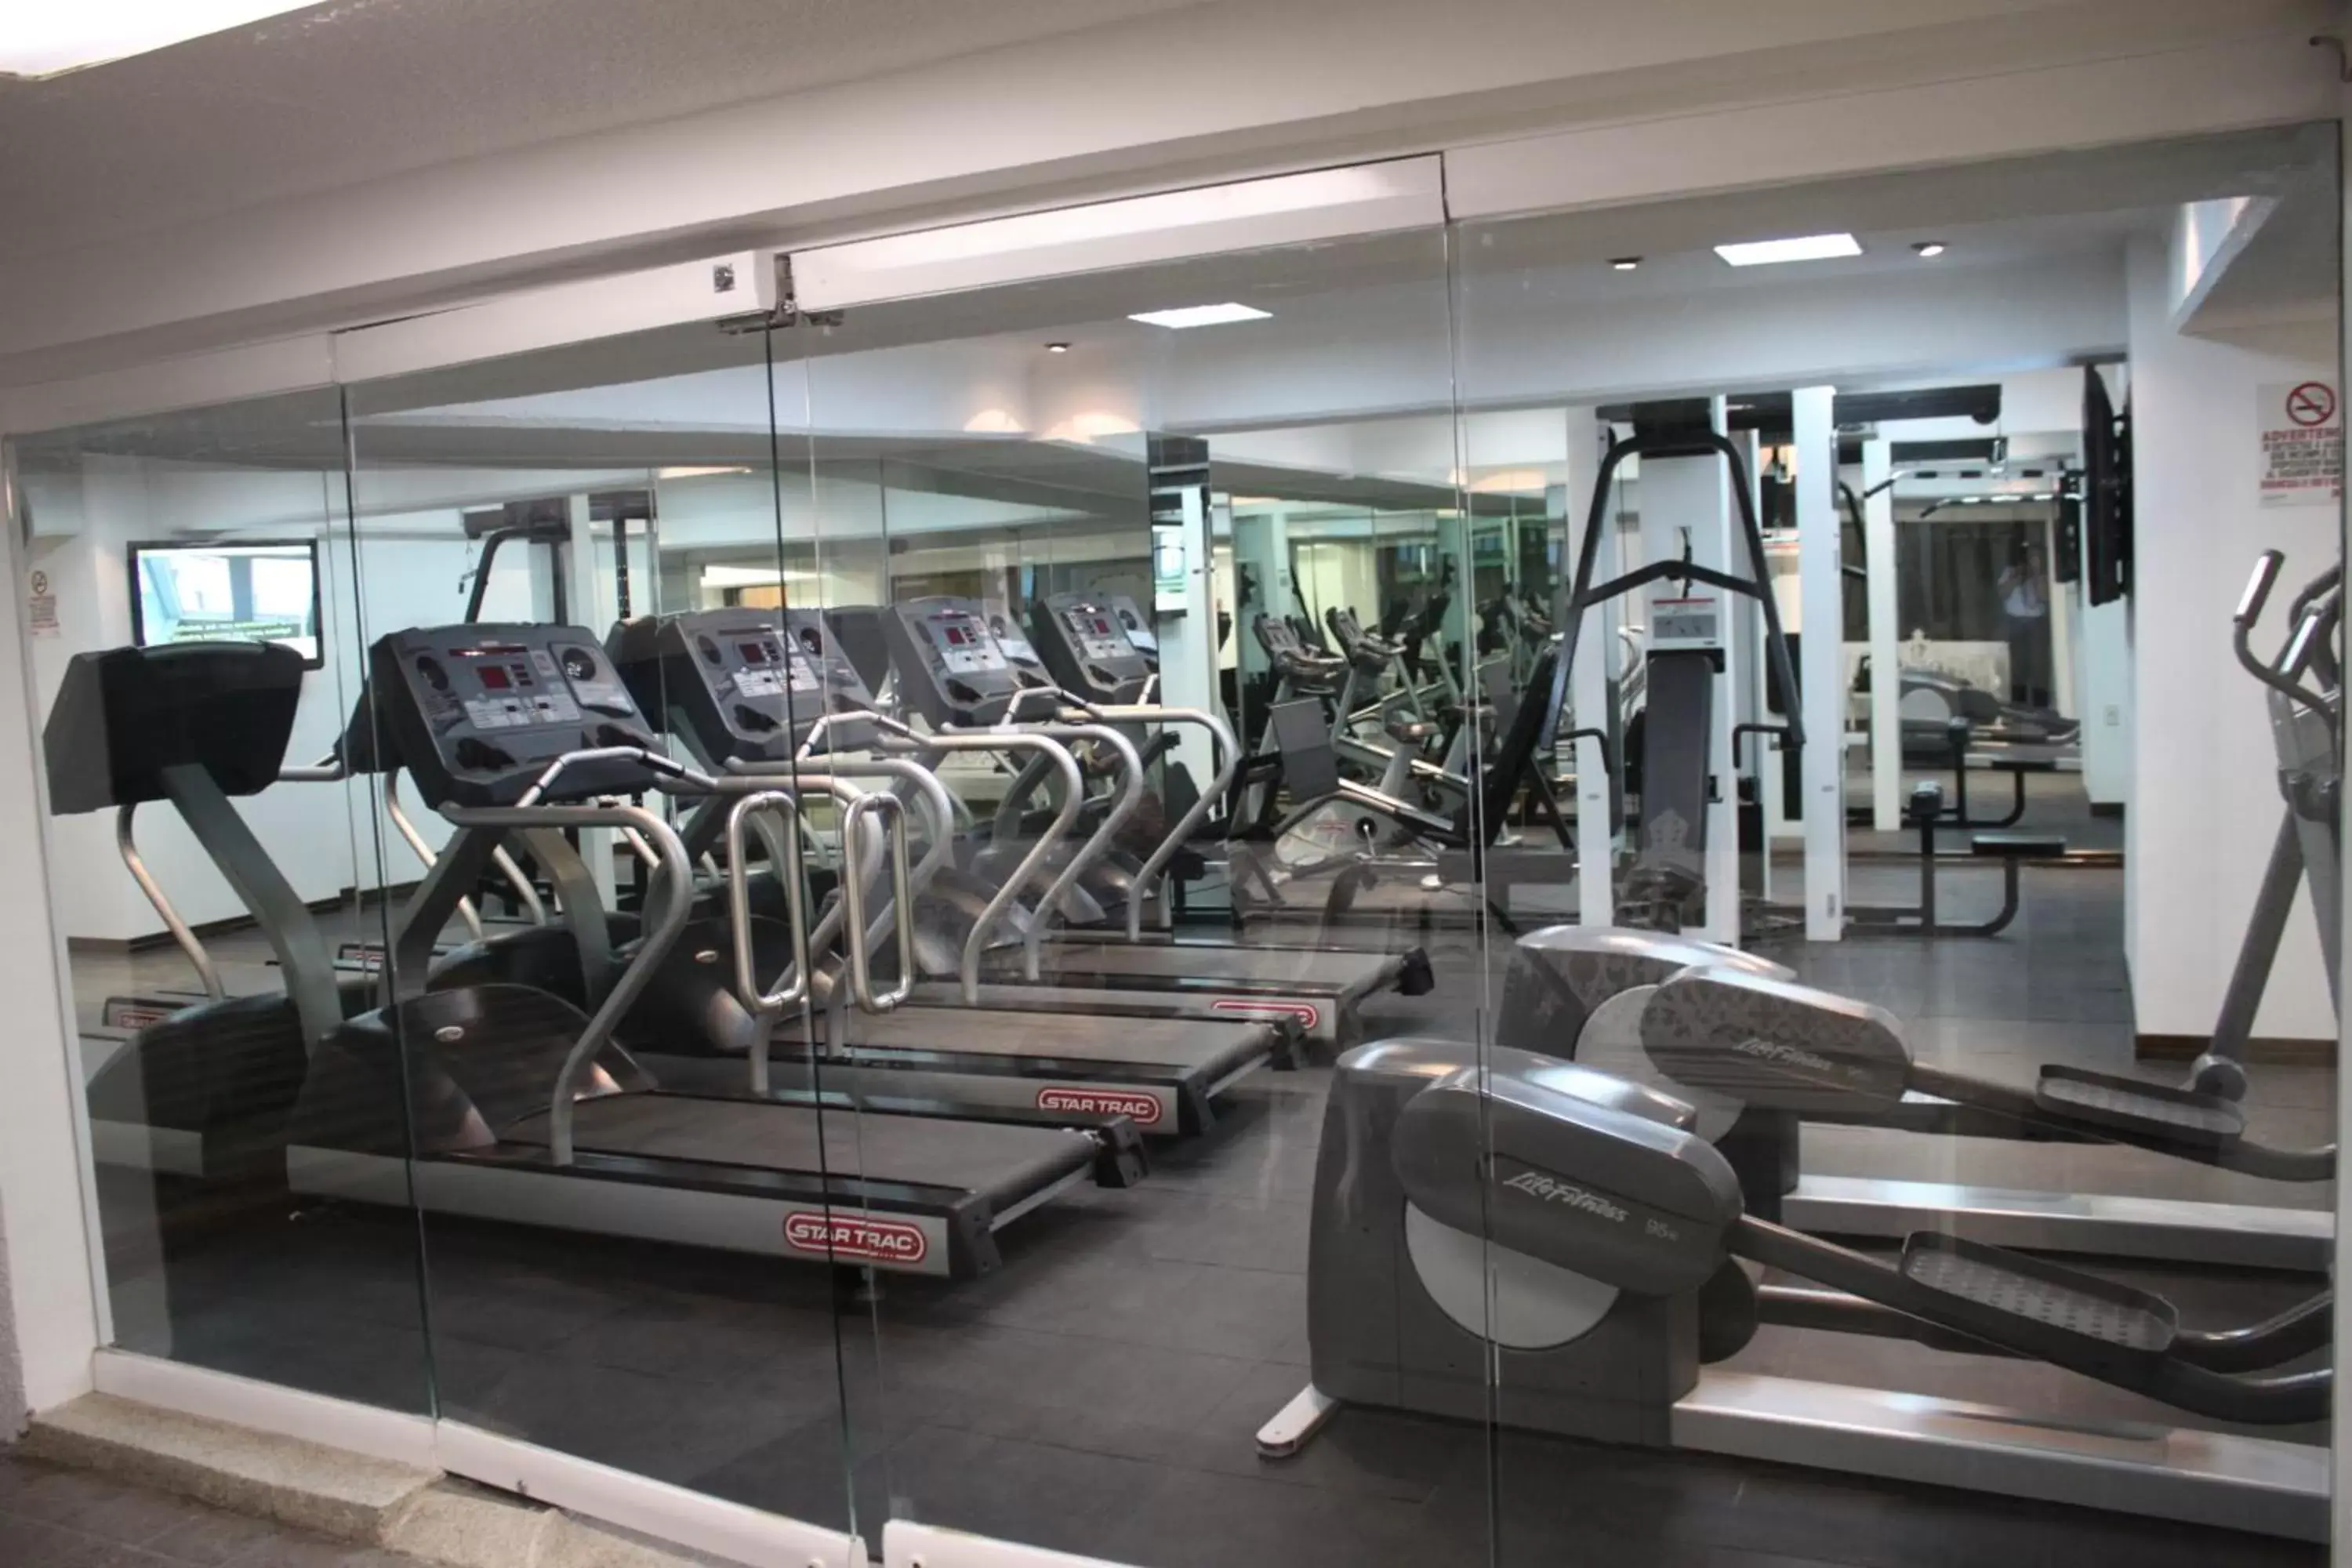 Fitness centre/facilities, Fitness Center/Facilities in Aranzazu Centro Historico